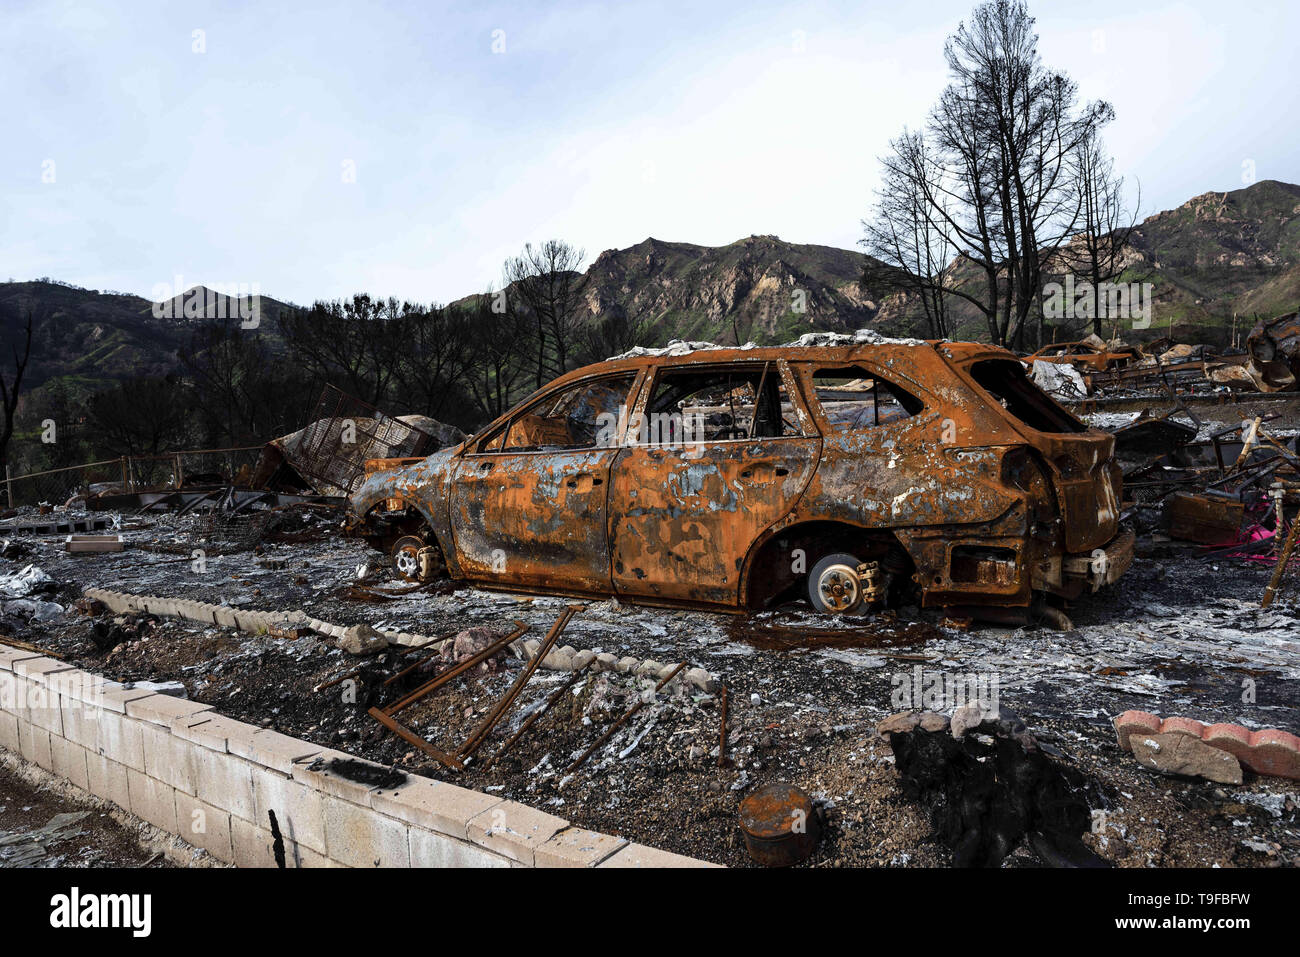 Agoura Hills, CA, USA. Mar 11, 2019. Une voiture brûlée est vu dans la suite de l'incendie mortel wid Woolsey à Agoura Hills, Californie.Des milliers de pompiers ont combattu l'incendie de la brosse 2018 Woolsey en Californie du sud que de dizaines de milliers de personnes étaient en cours d'évacuation obligatoire. 1500 détruits - 341 structures ont été endommagés, détruits ou endommagés, 3 pompiers ont été blessés et 3 morts civils rencontrés. La cause de l'incendie est encore incertain. Ronen Crédit : Tivony SOPA/Images/ZUMA/Alamy Fil Live News Banque D'Images